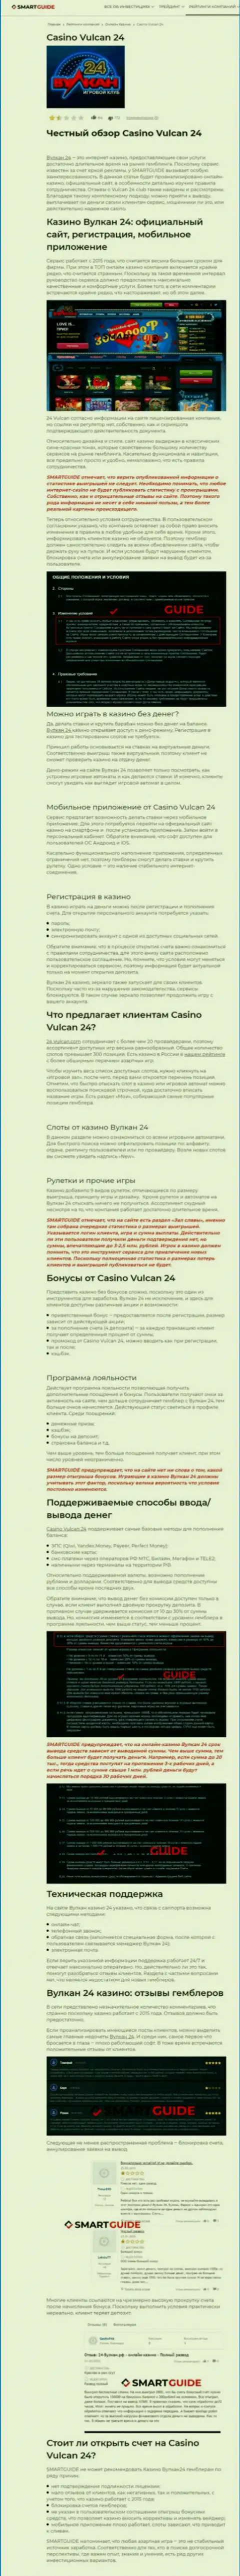 Вулкан-24 Ком - контора, зарабатывающая на присваивании финансовых активов собственных реальных клиентов (обзор деятельности)